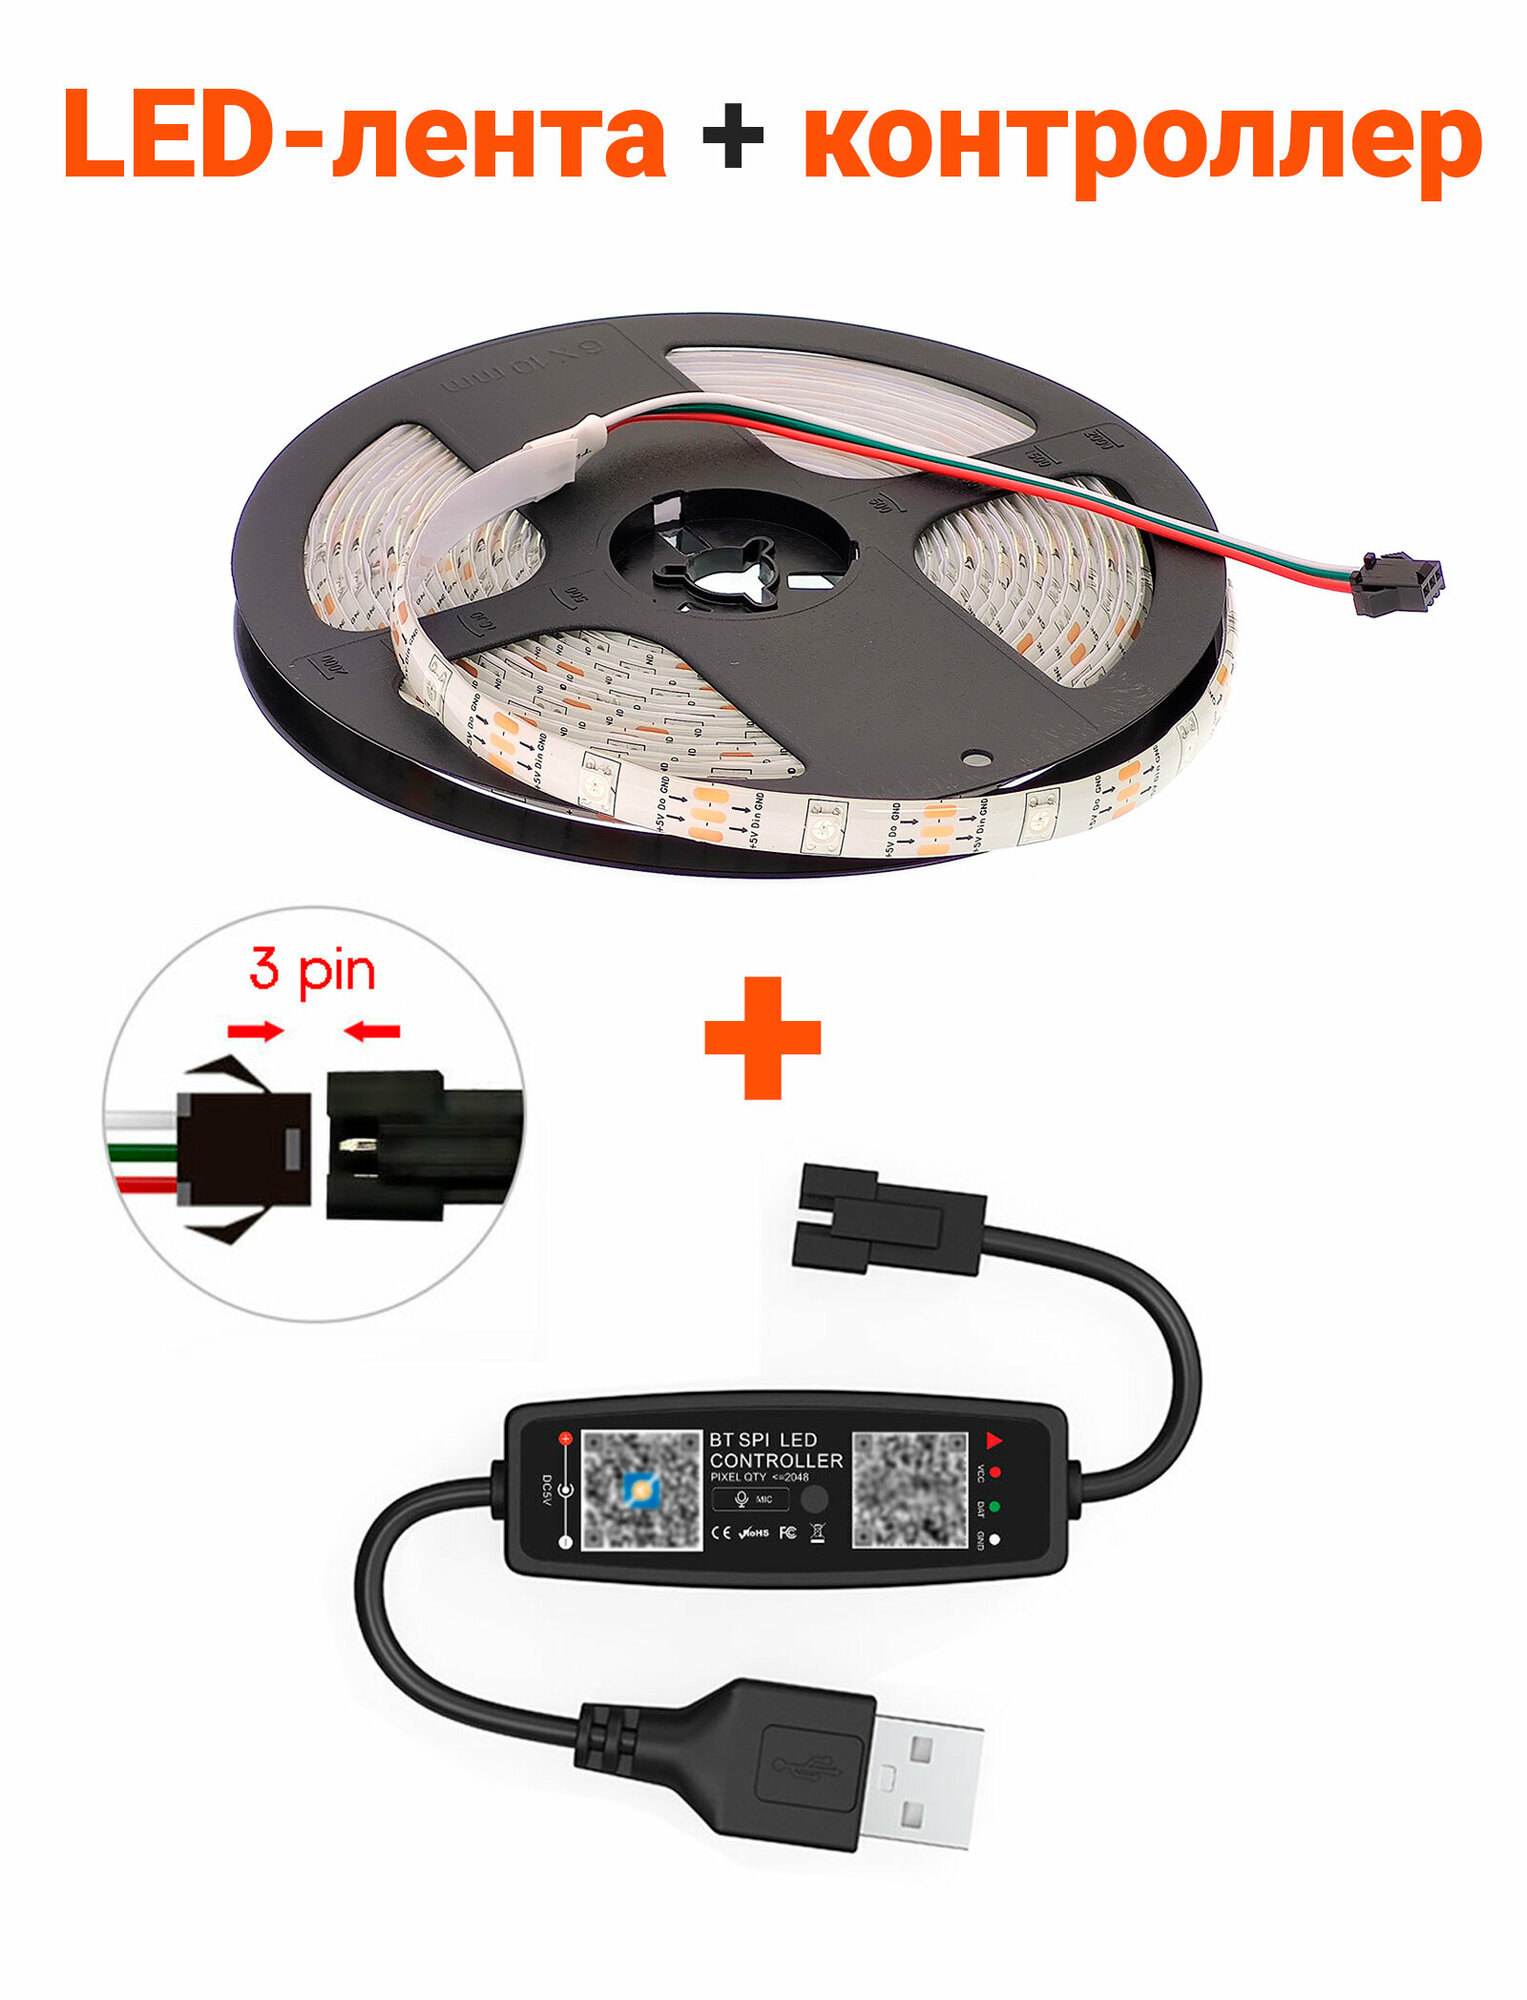 Комплект LED ленты адресной RGB 5м (SMD5050 WS2812 3pin 5В IP65) и контроллер USB 5В